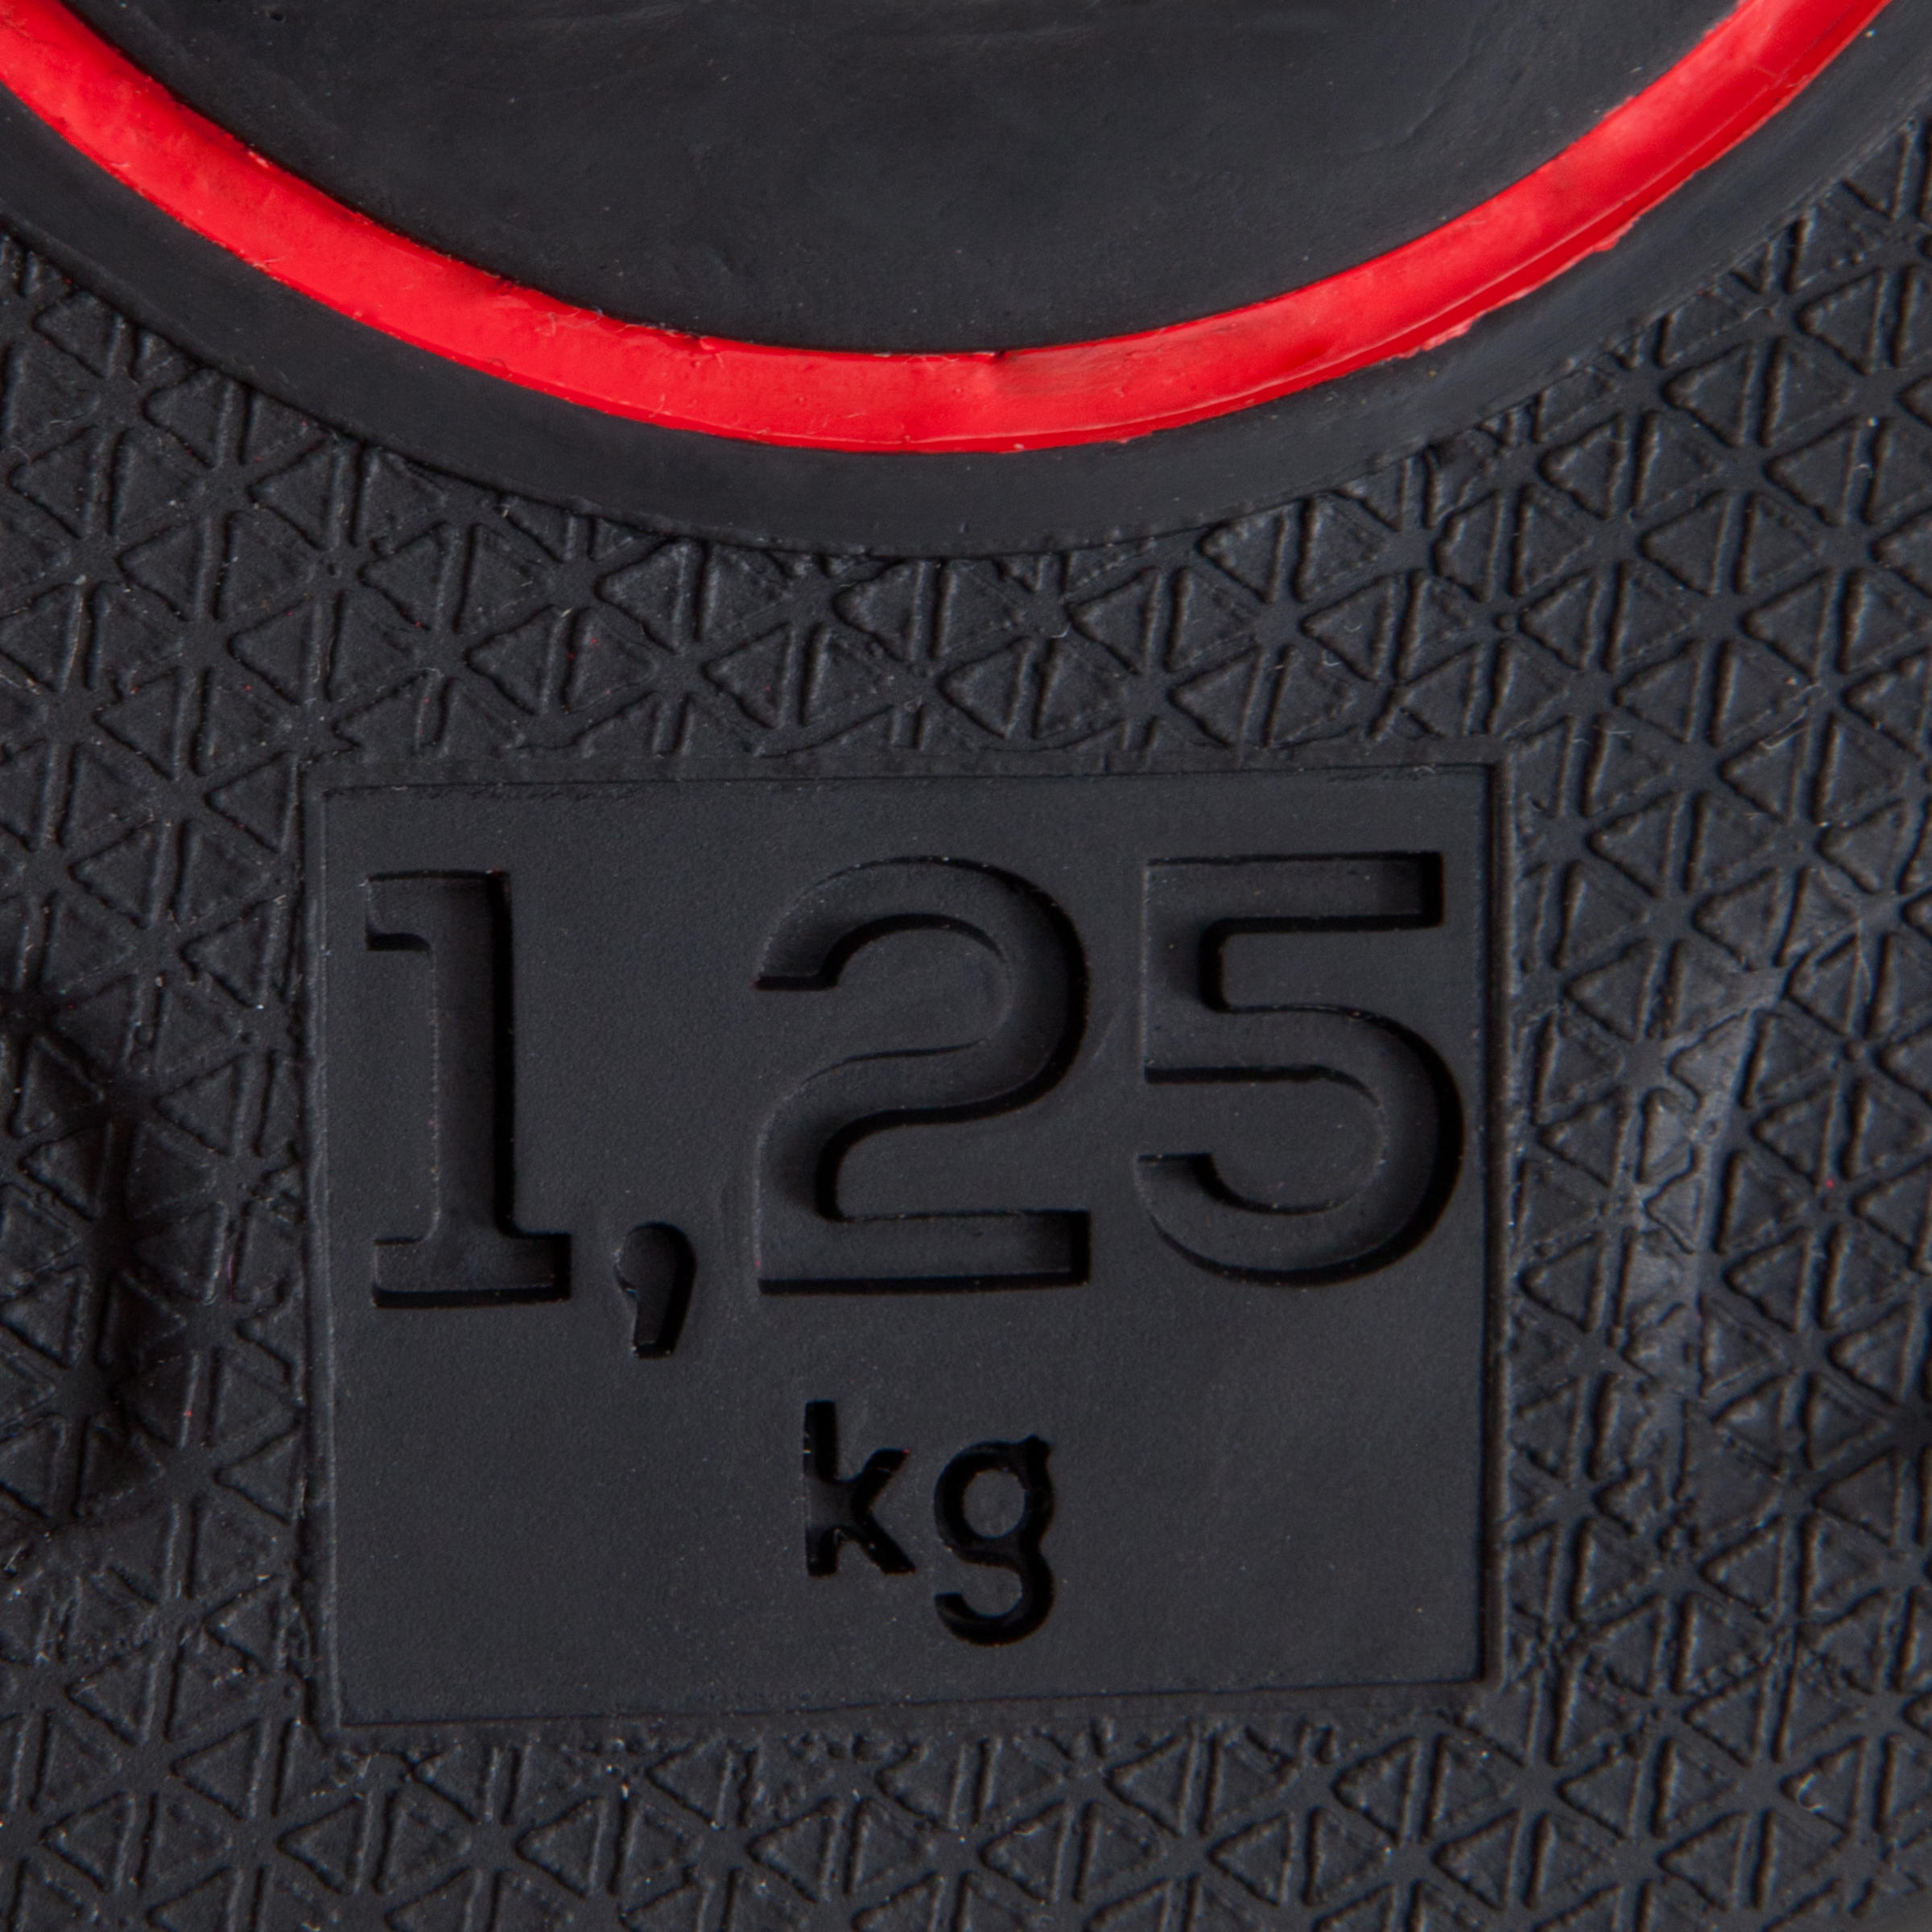 1.25 kg (2.75 lb) Rubber Weight Plate - CORENGTH